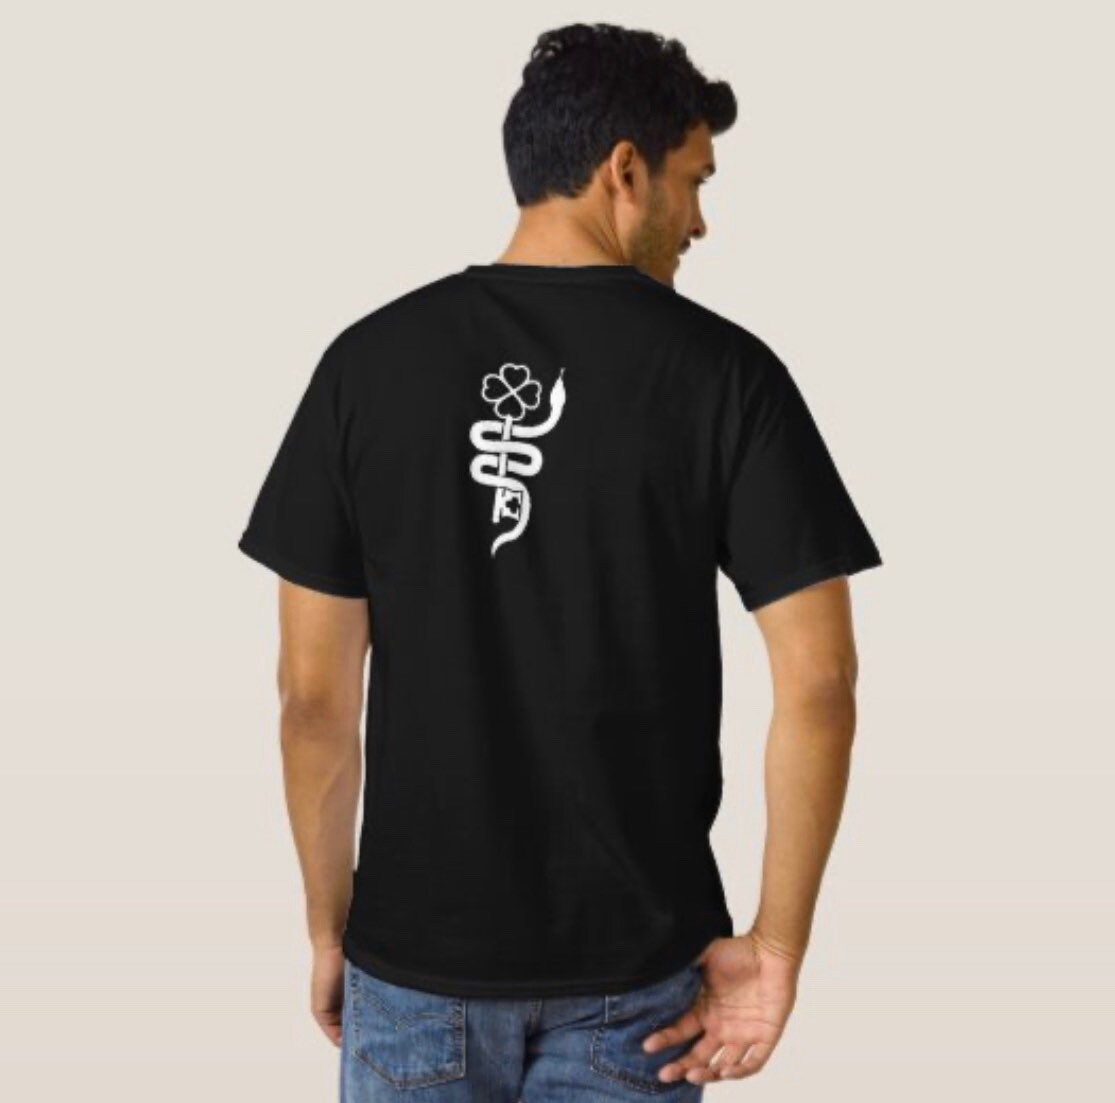 SSA Baron Samedi T-Shirt